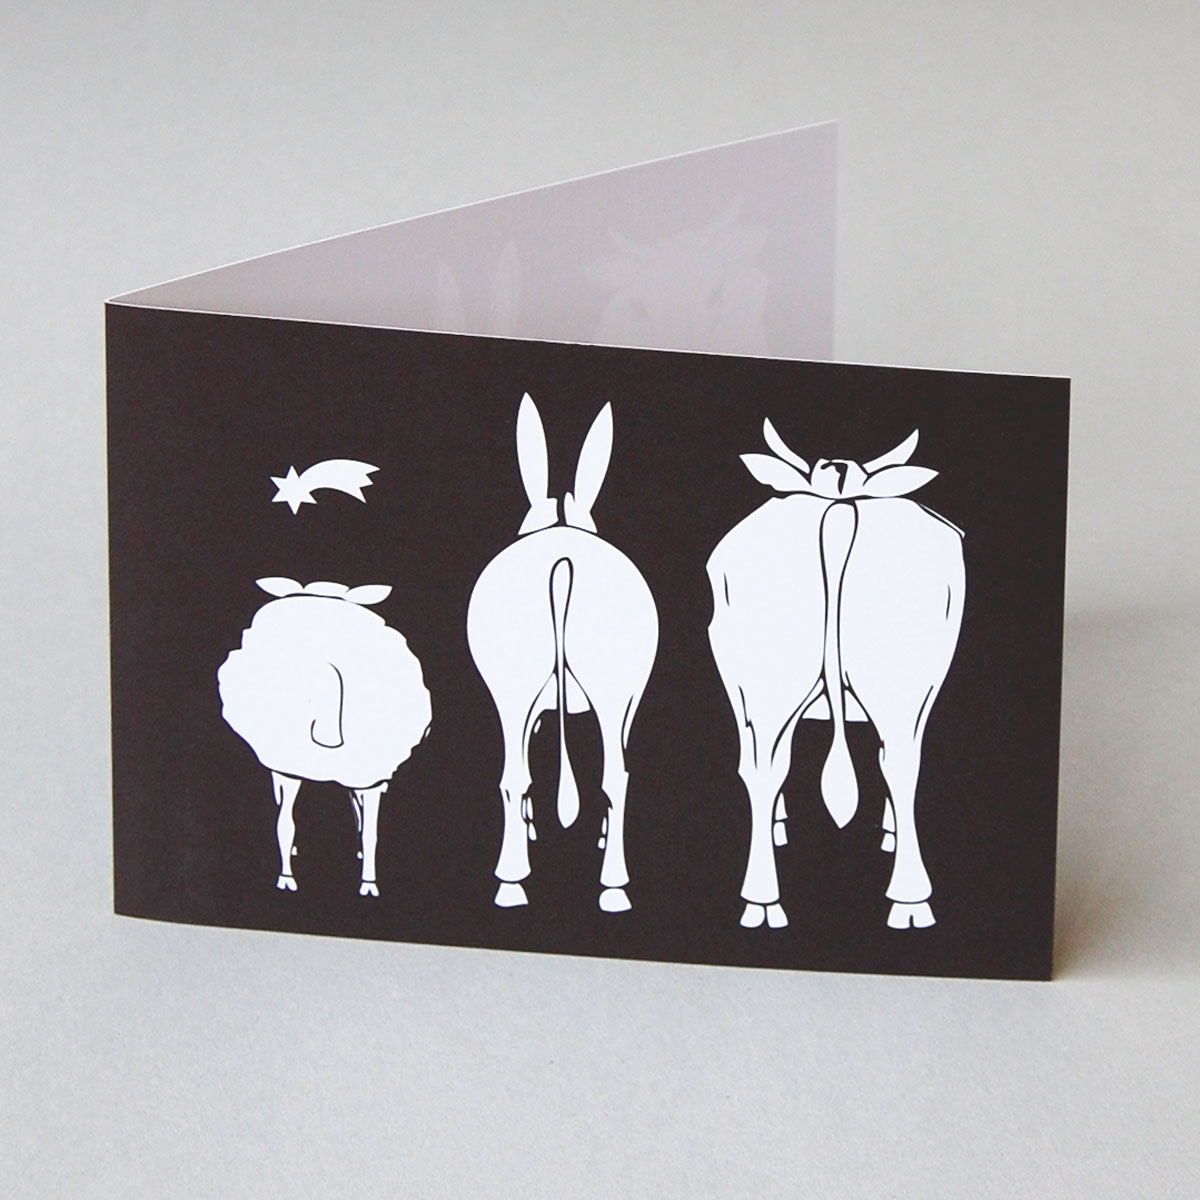 Ochs, Esel und Schaf, originelle Weihnachtskarten mit dem Stern von Betlehem